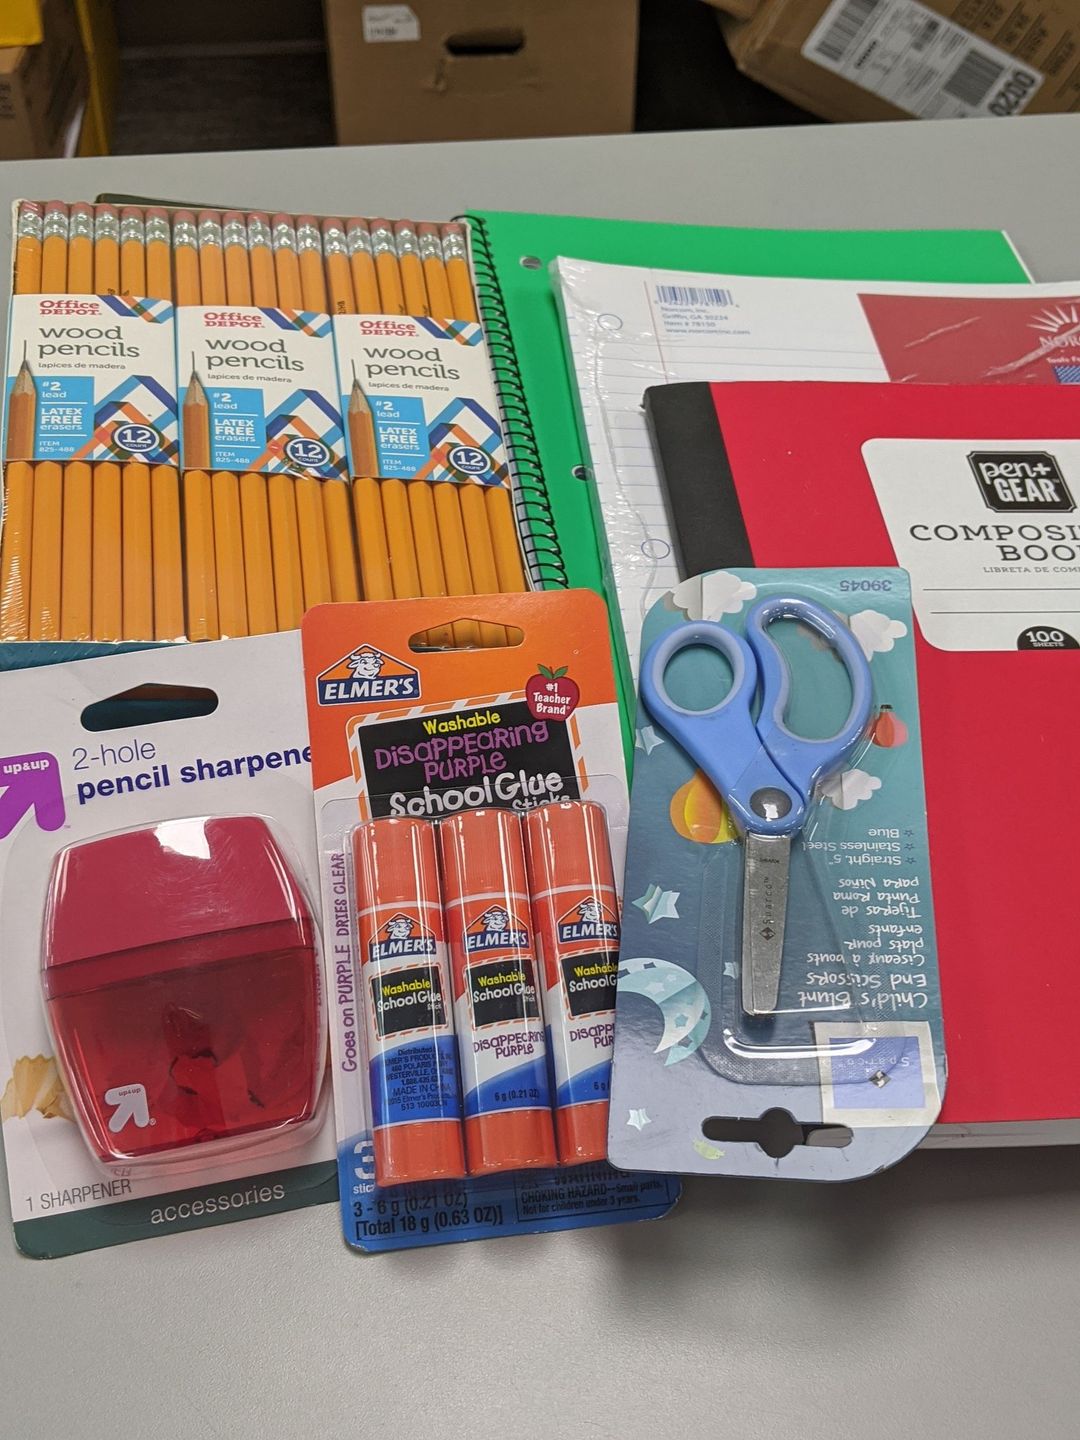 school-supplies